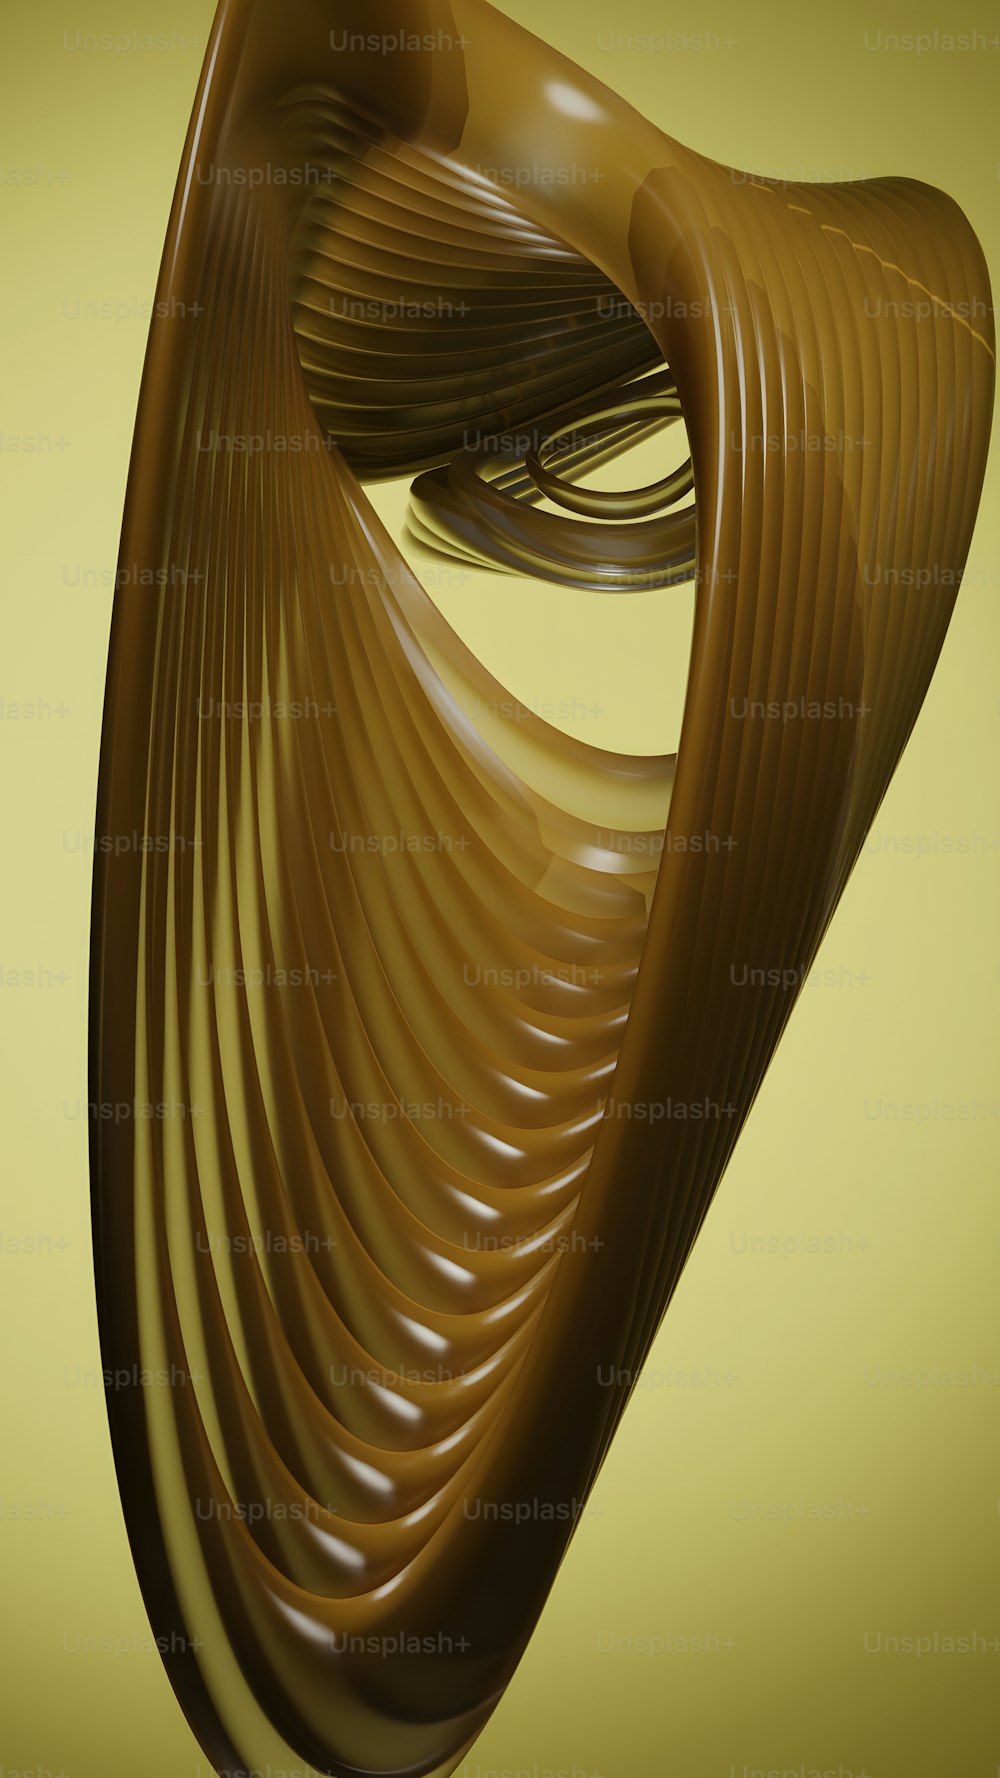 un objet brun avec des lignes ondulées sur fond jaune